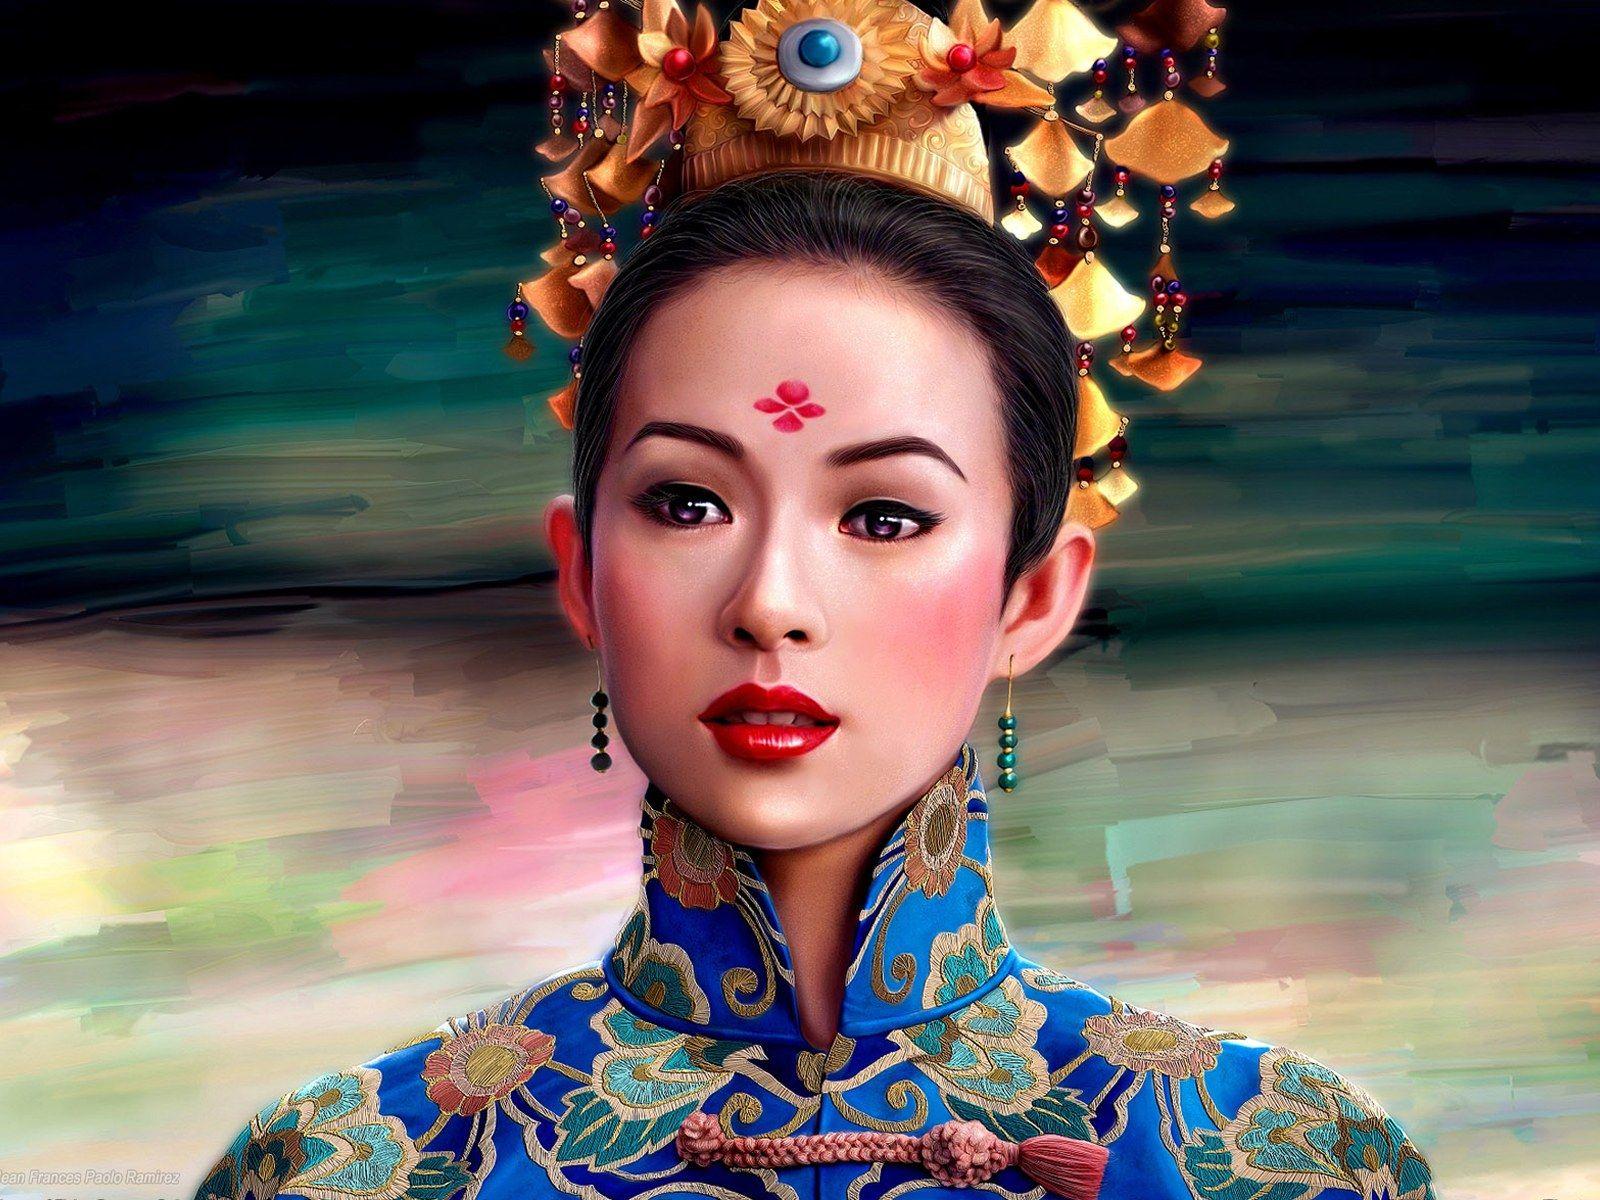 Chinese Princess, art, asian, beauty, china, lady, princes, woman